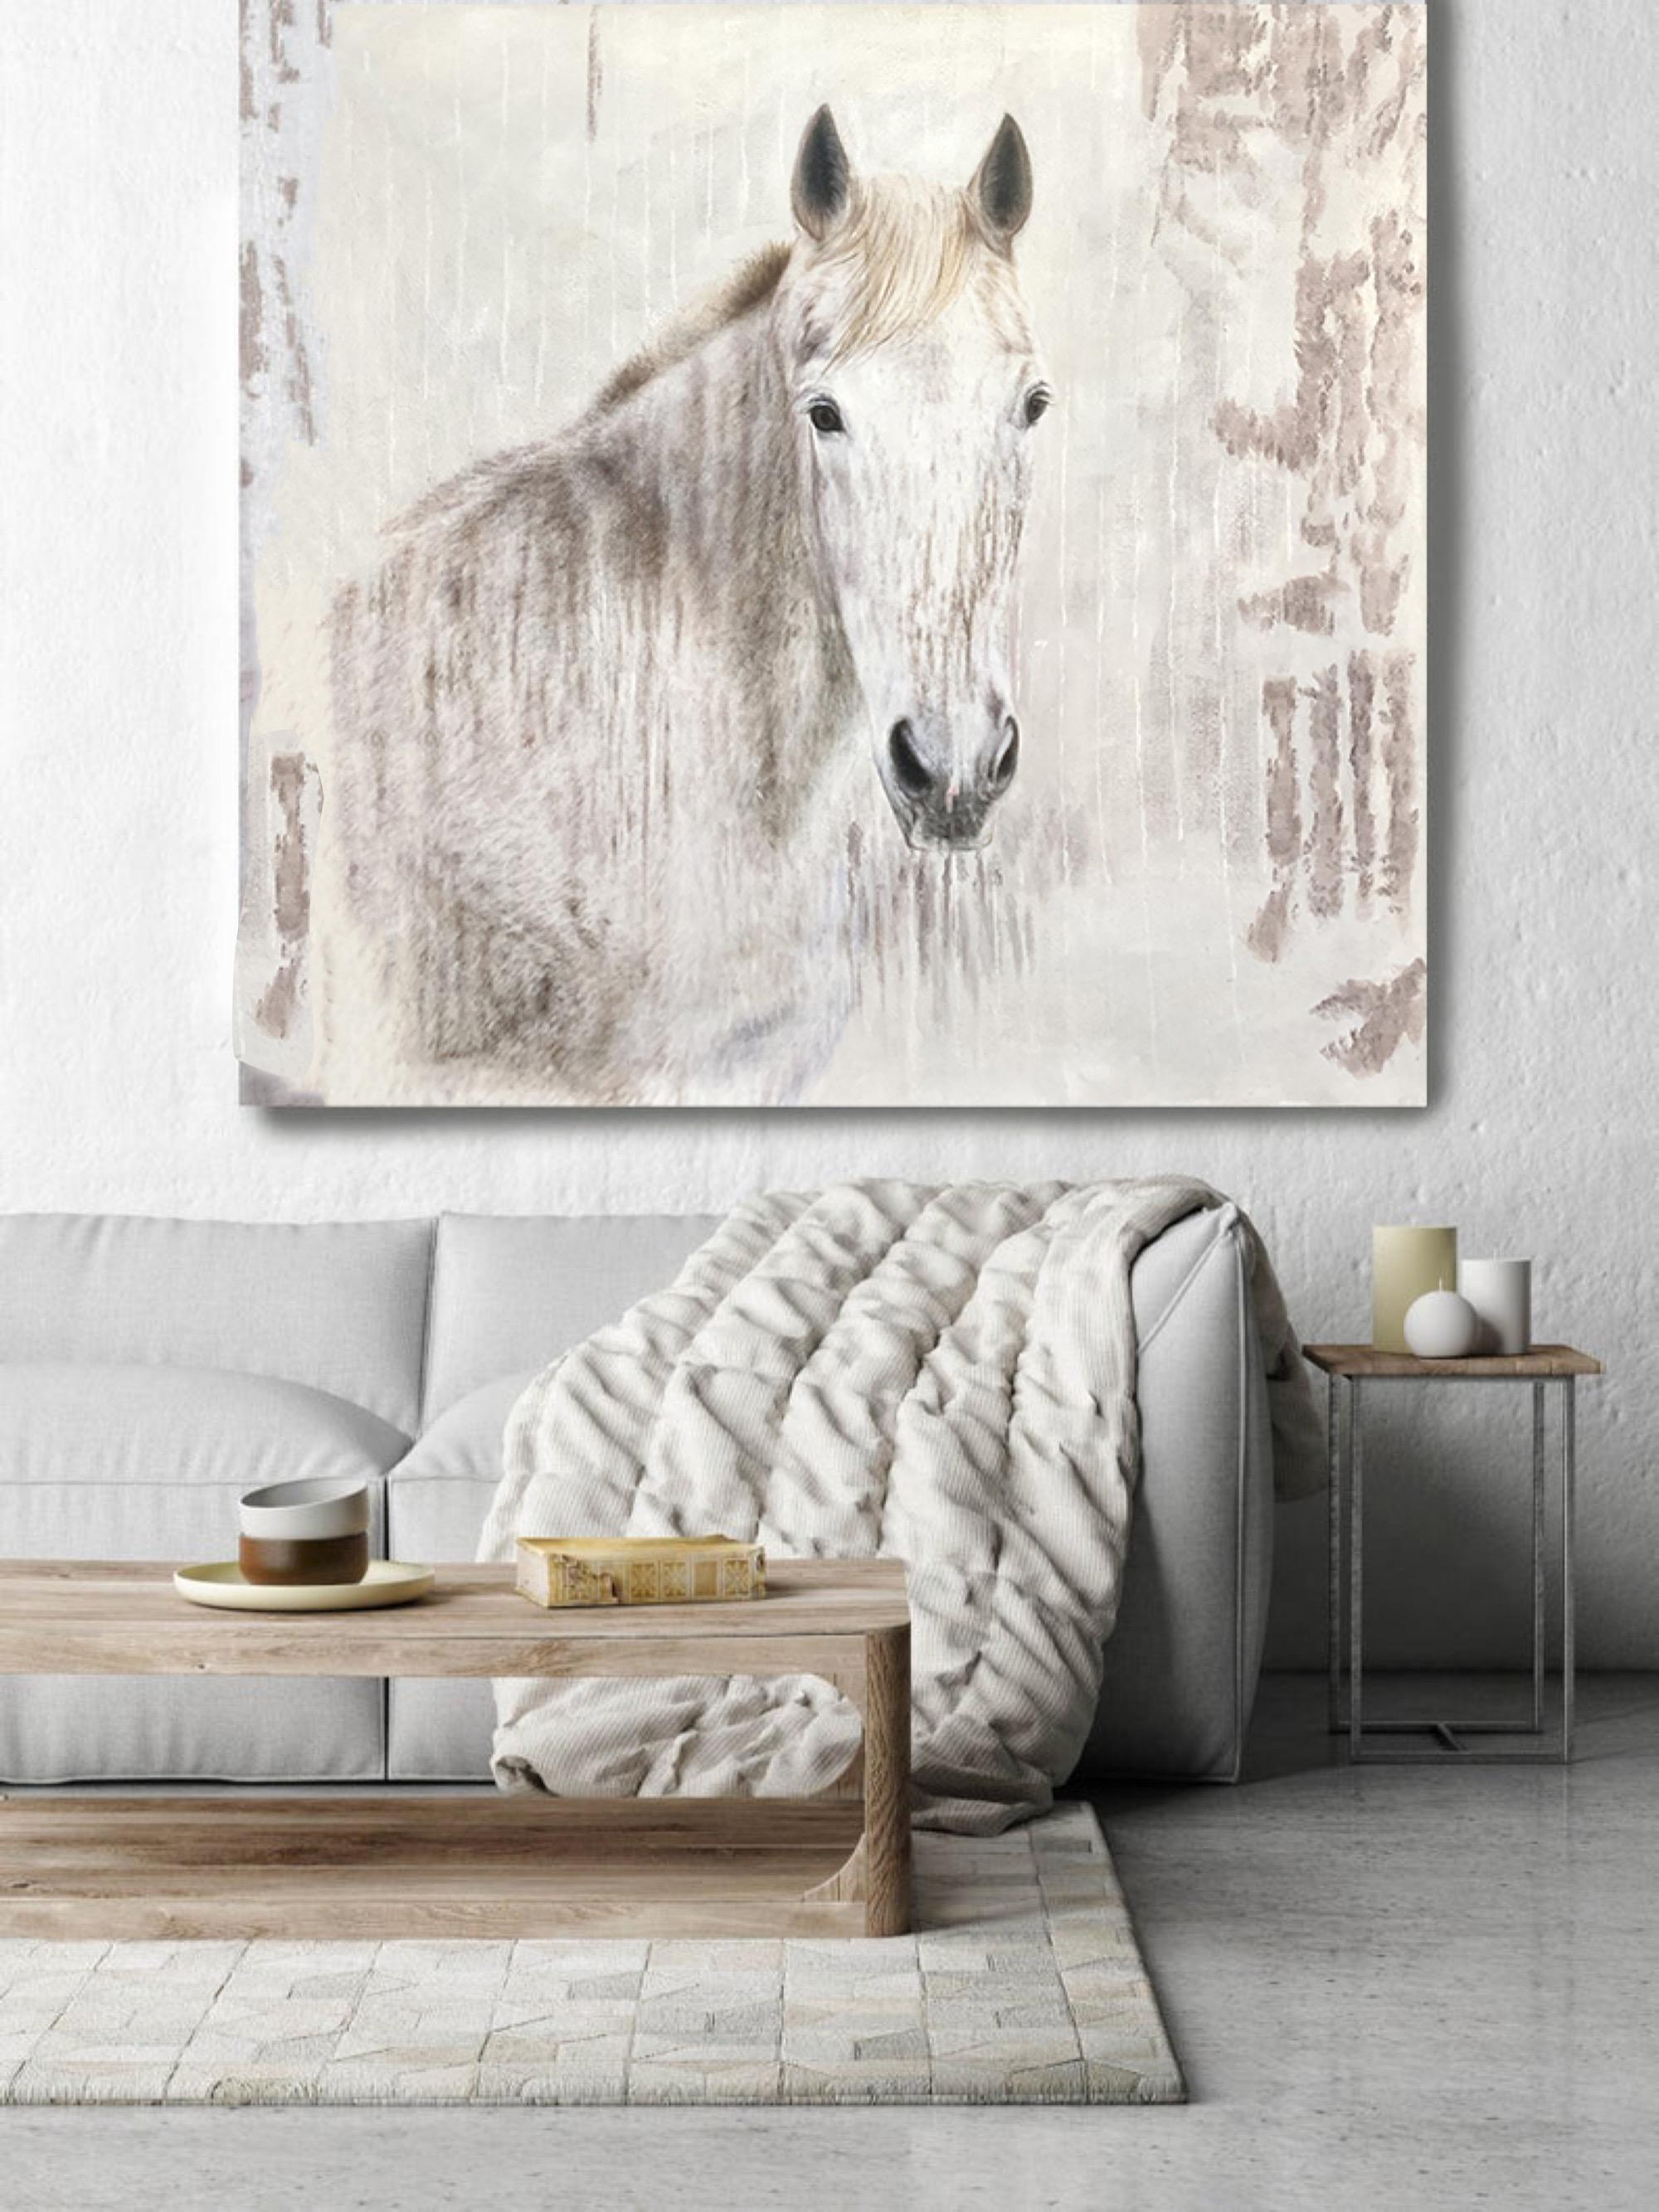 Animal Painting Irena Orlov - Peinture à l'huile sur toile « White Beauty » représentant un cheval rustique - Art équestre - Peinture sur toile « 58X58 » avec cheval